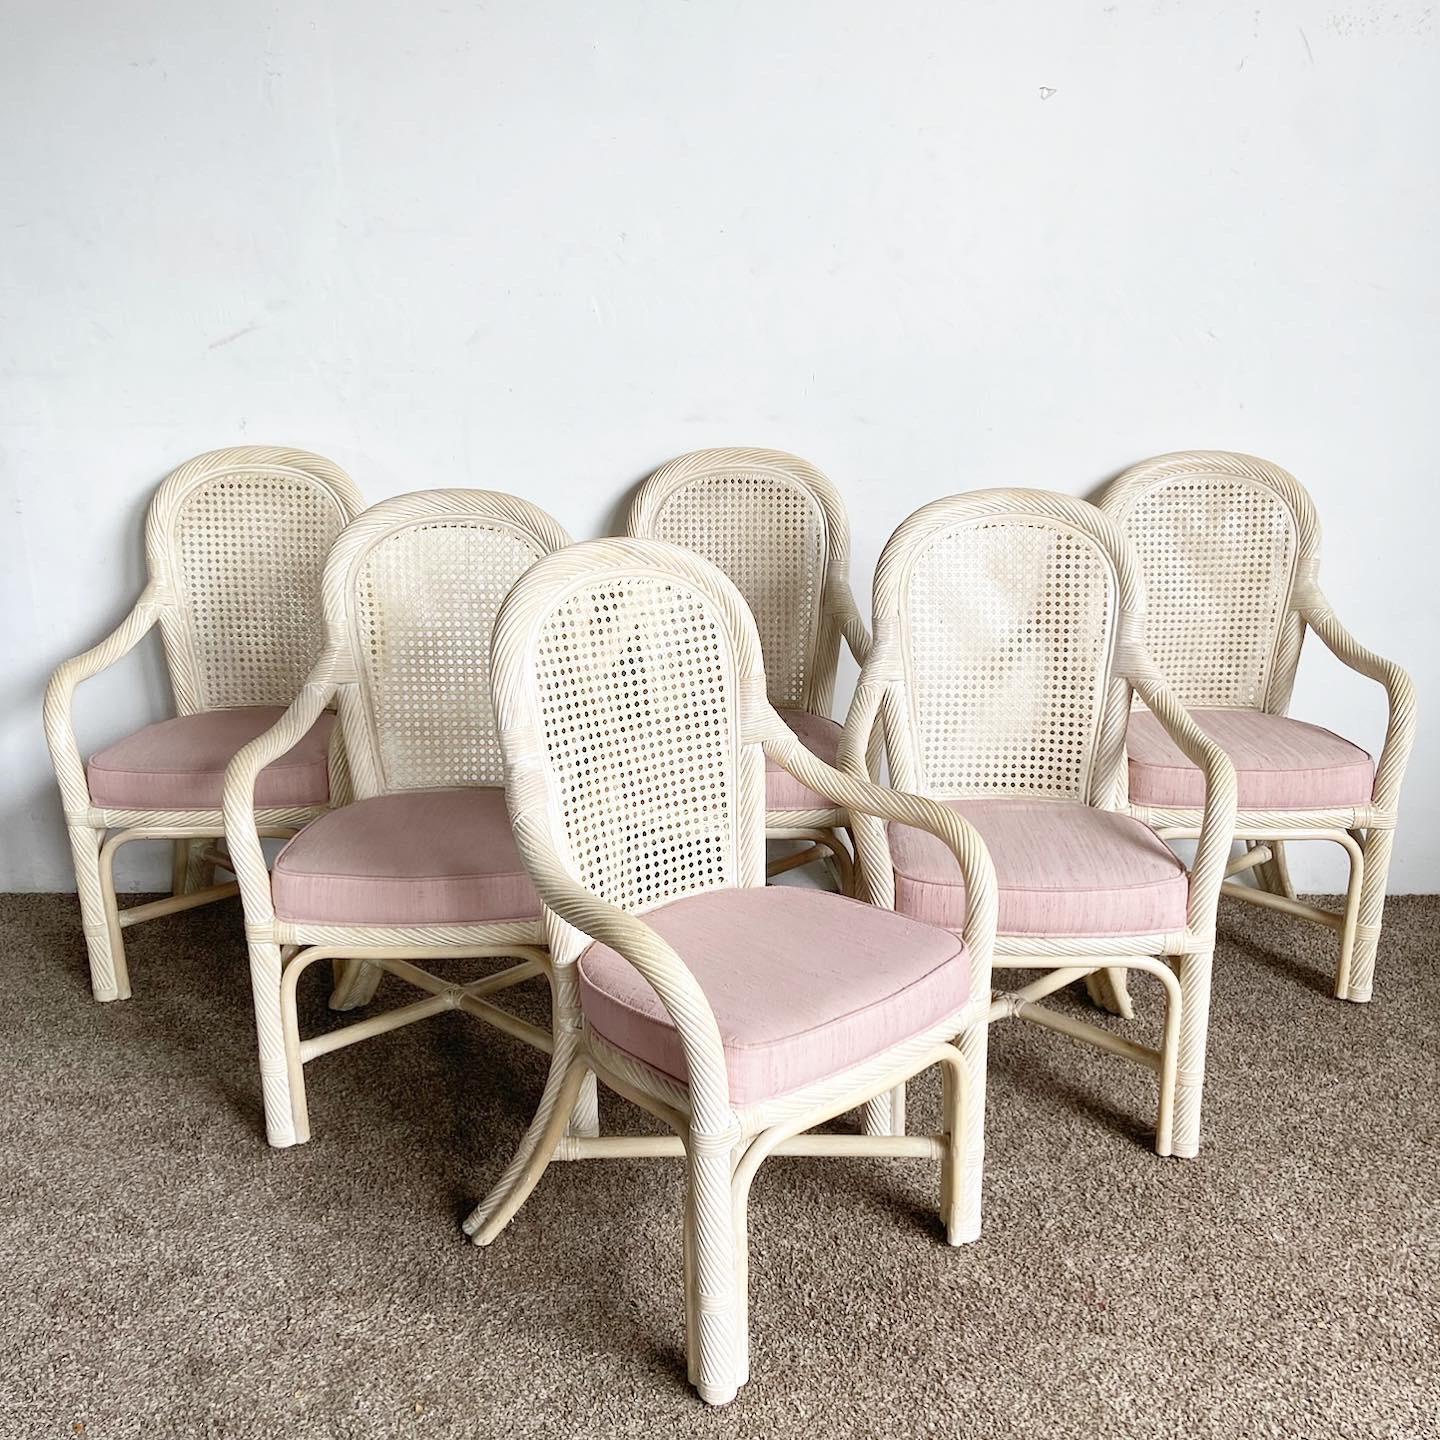 Nos chaises à accoudoirs de salle à manger Boho Chic Twisted Pencil Reed Cane Back se présentent sous la forme d'un lot de six, offrant un charme éclectique grâce à leurs coussins roses et à leur design unique.

Il se caractérise par une